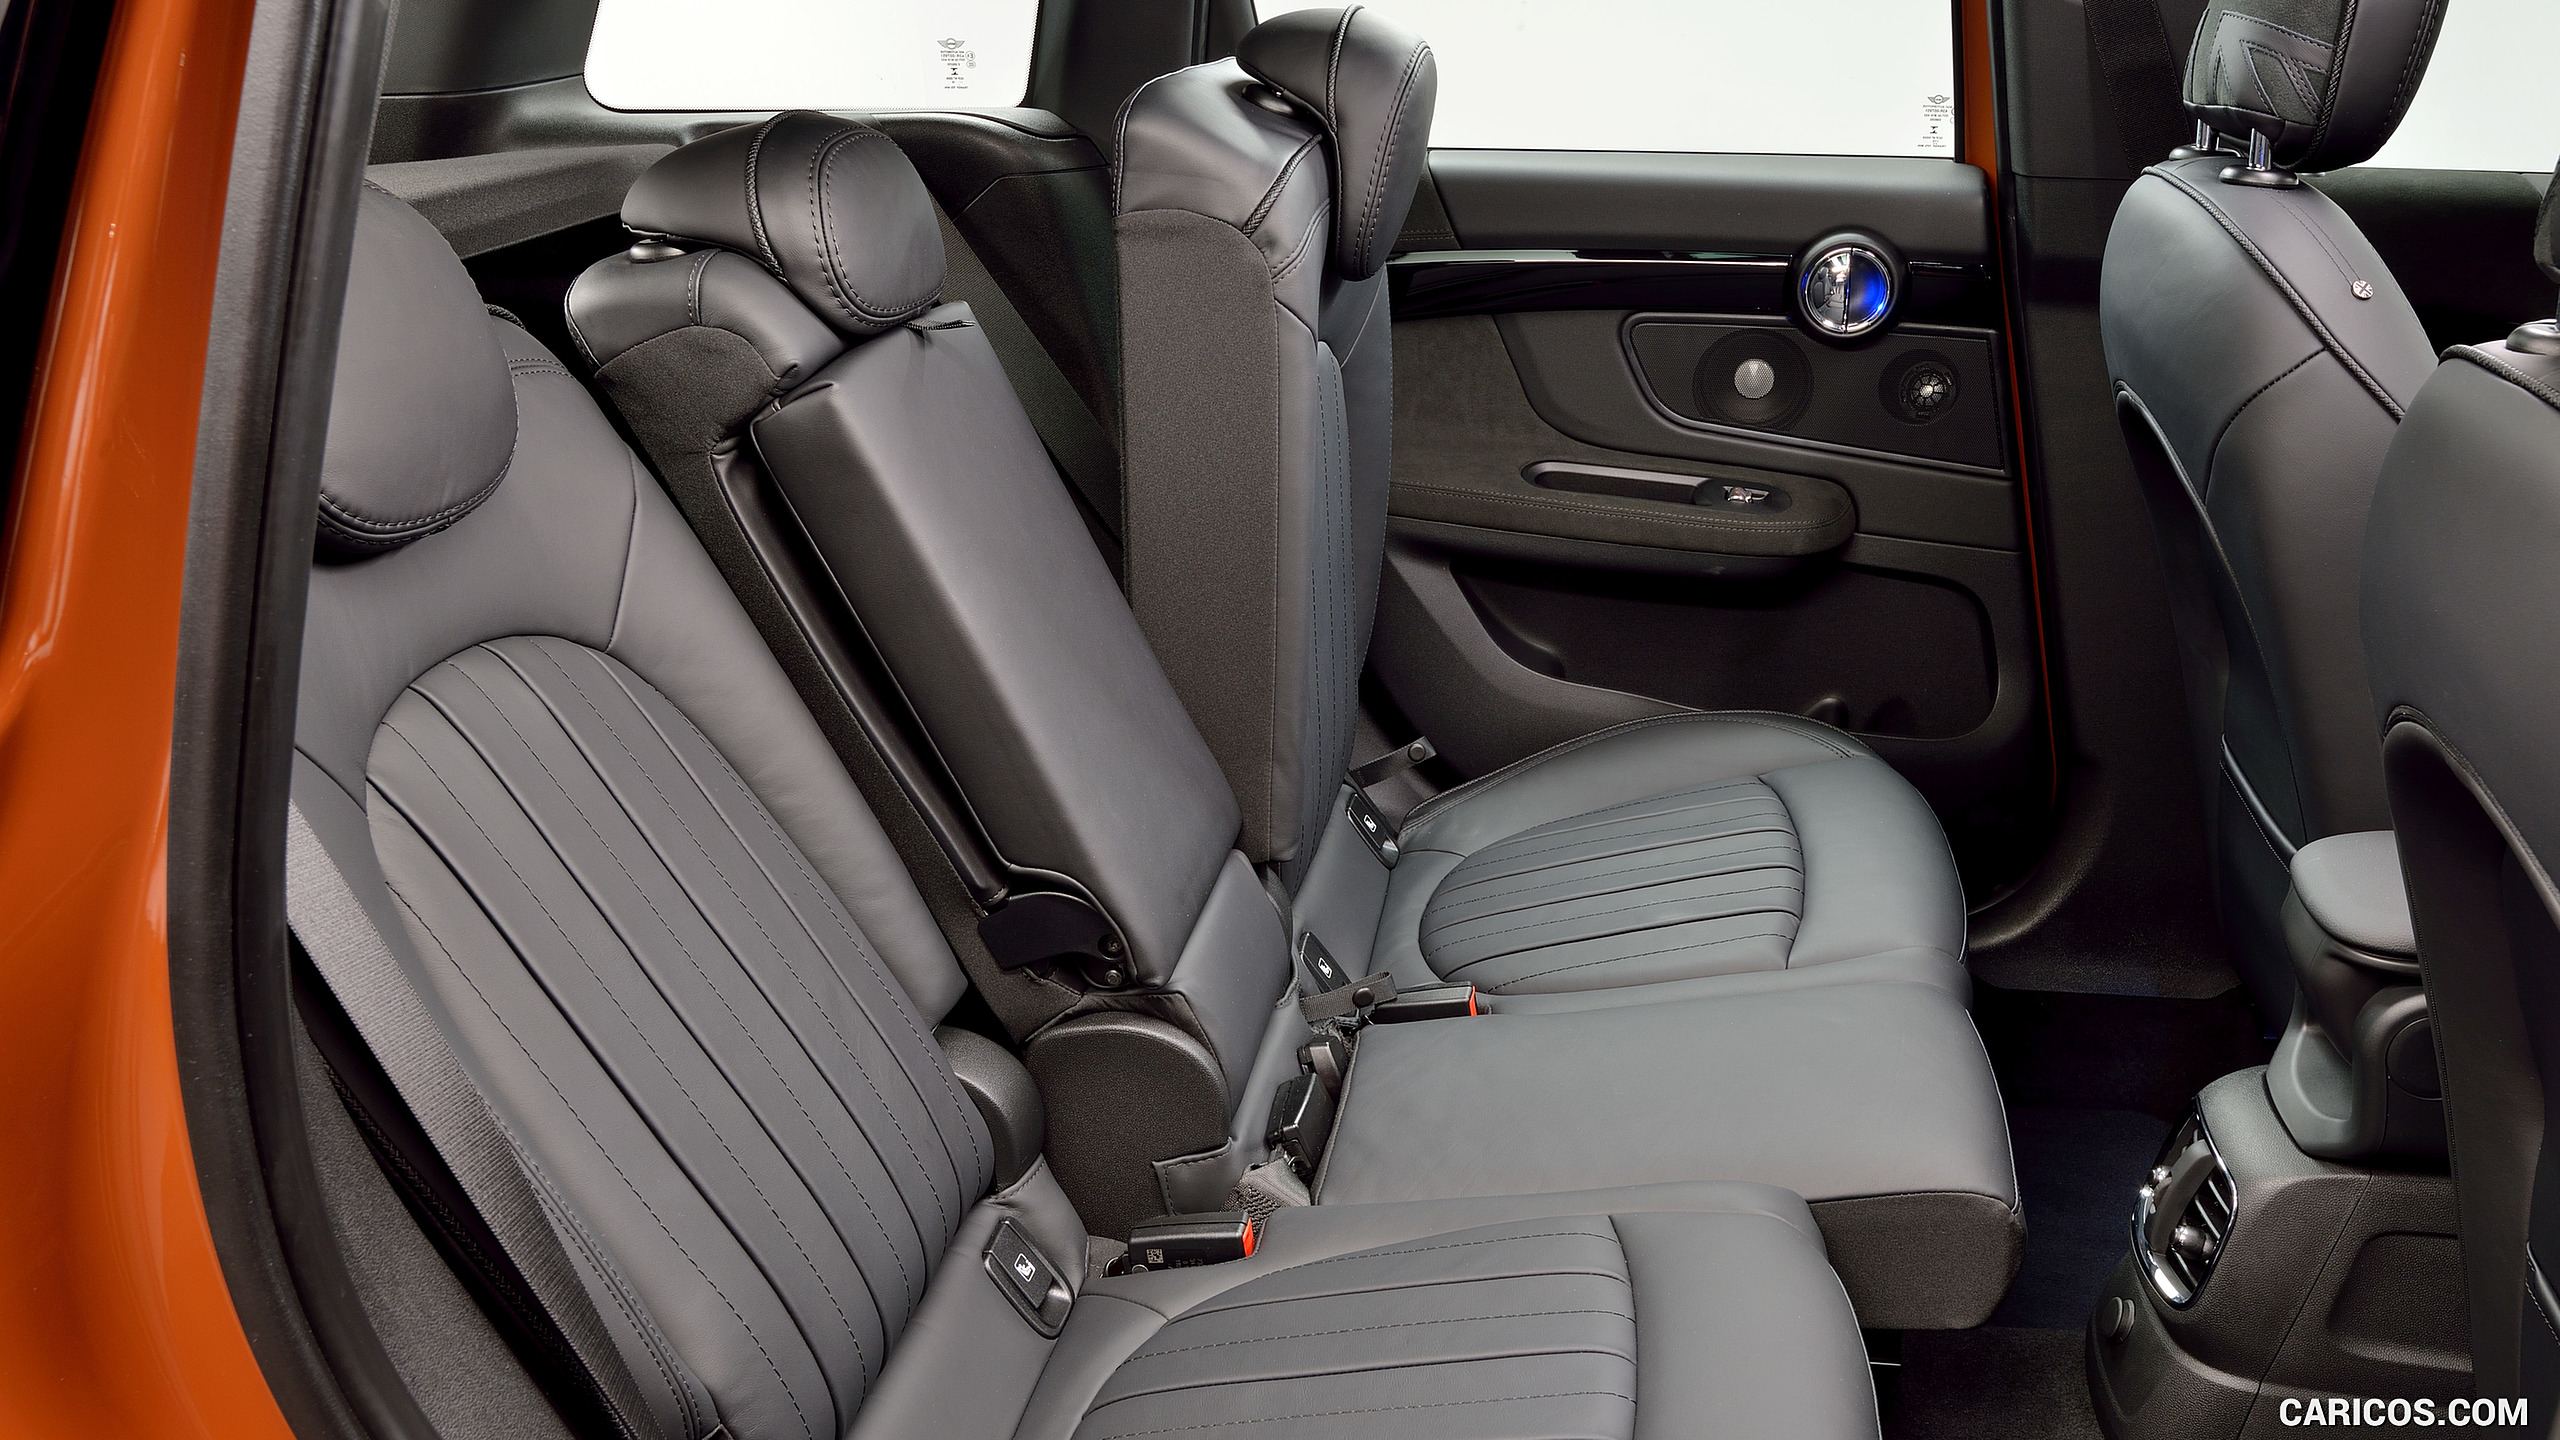 2017 MINI Cooper S Countryman ALL4 - Interior, Rear Seats, #233 of 372